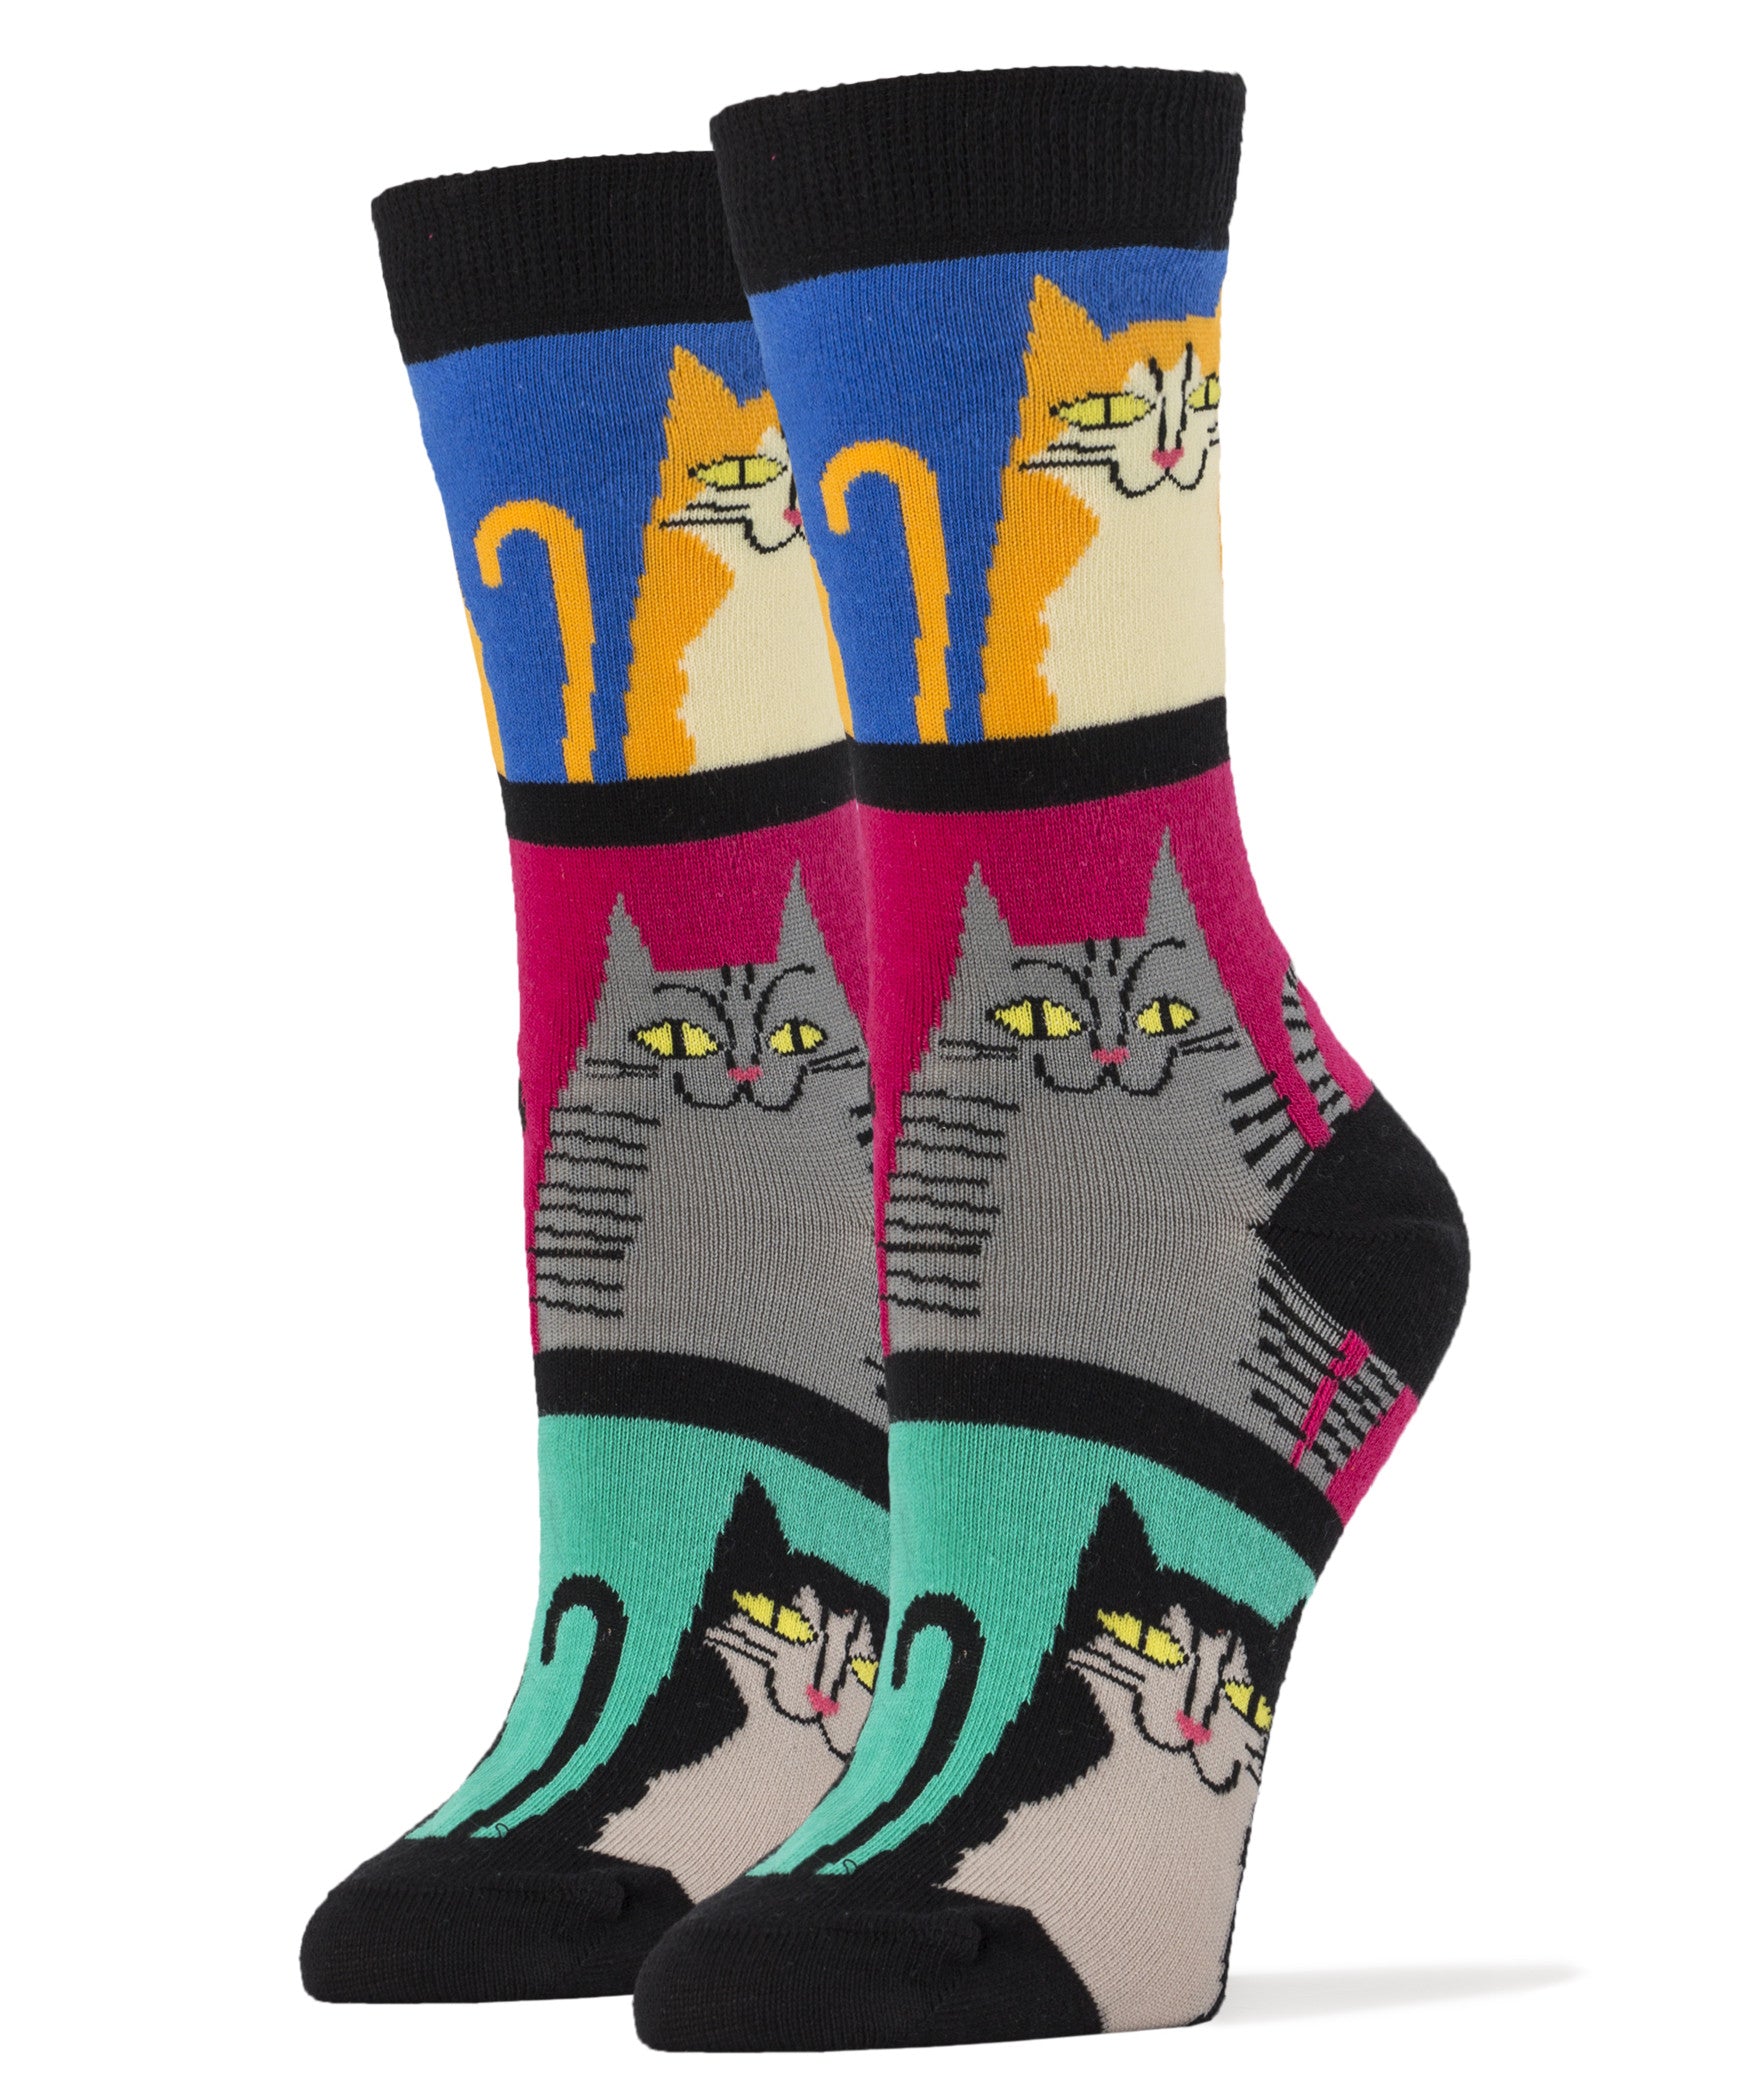 Women's Mod Meow Socks | Joy Of Socks1763 x 2100